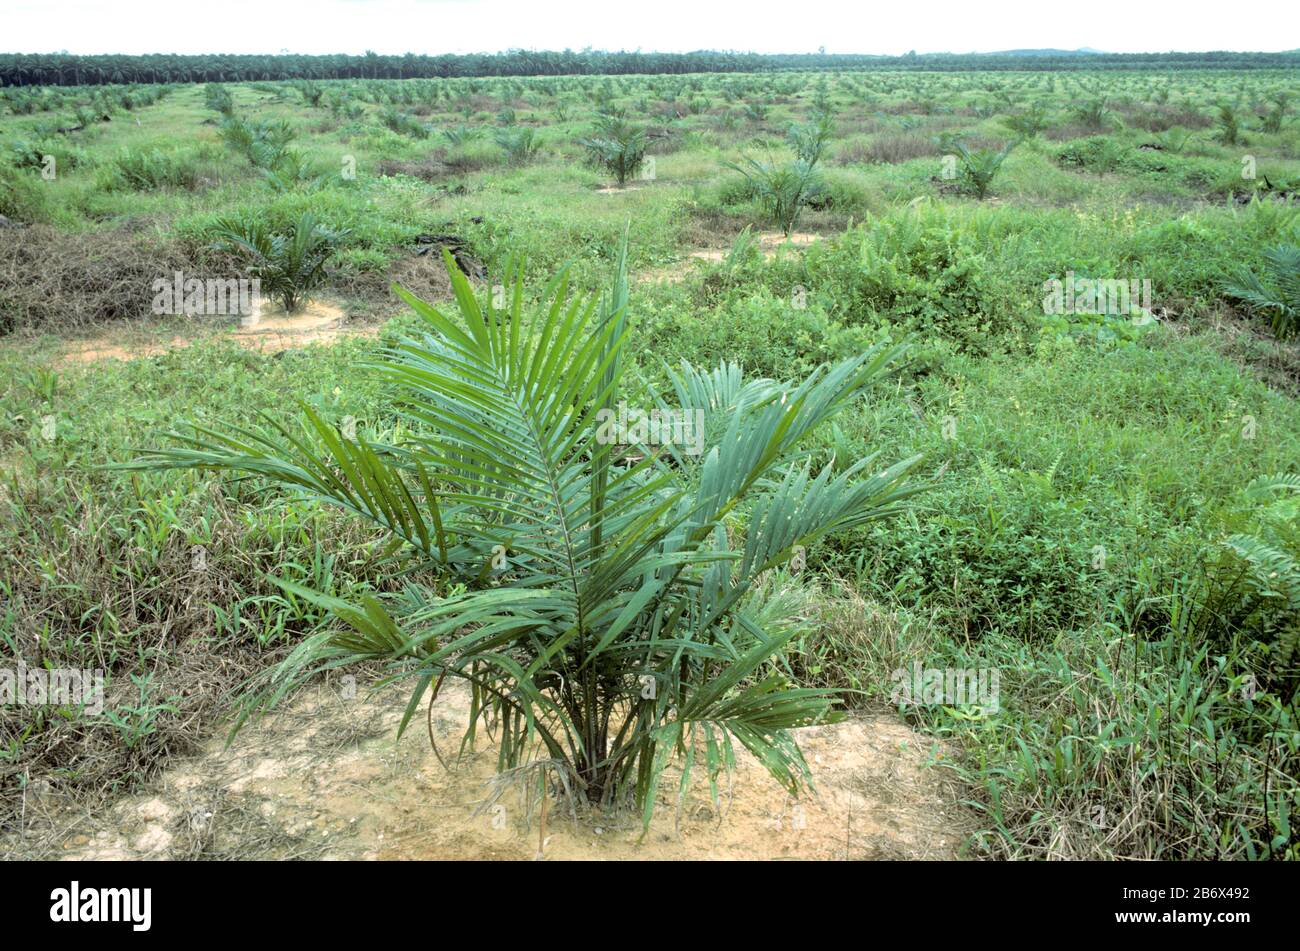 Junge Plantage von Ölpalmen (Elaeis guineensis) in der Gegend, die für die Anpflanzung und Landwirtschaft freigegeben wurde, Malaysia, Februar Stockfoto